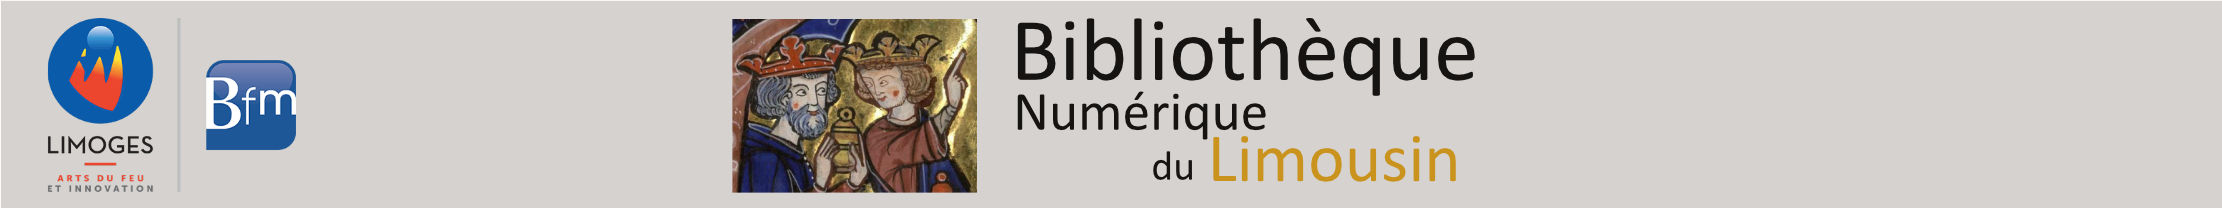 Bibliothèque numérique du Limousin